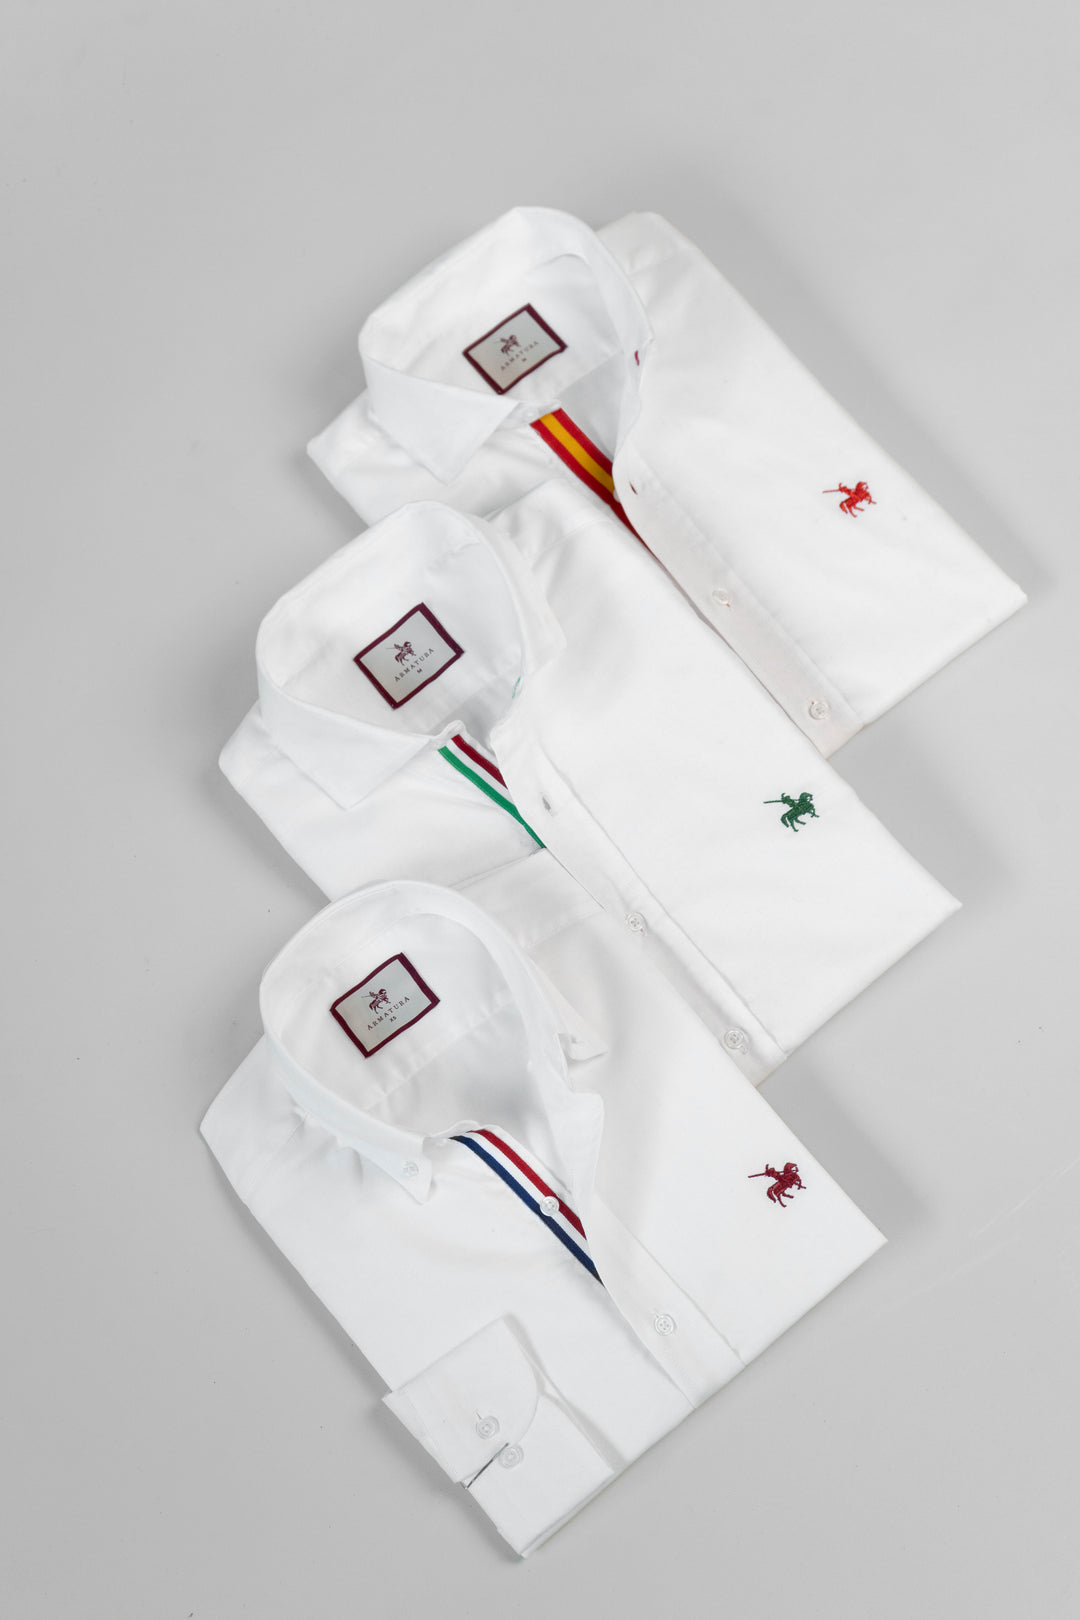 3 camisas blancas para hombre Insignia Armatura. Camisas manga larga con detalles de colores en el cuello y logo bordado en el pecho de distintos colores. Imagen producto expuesto 3 camisas.